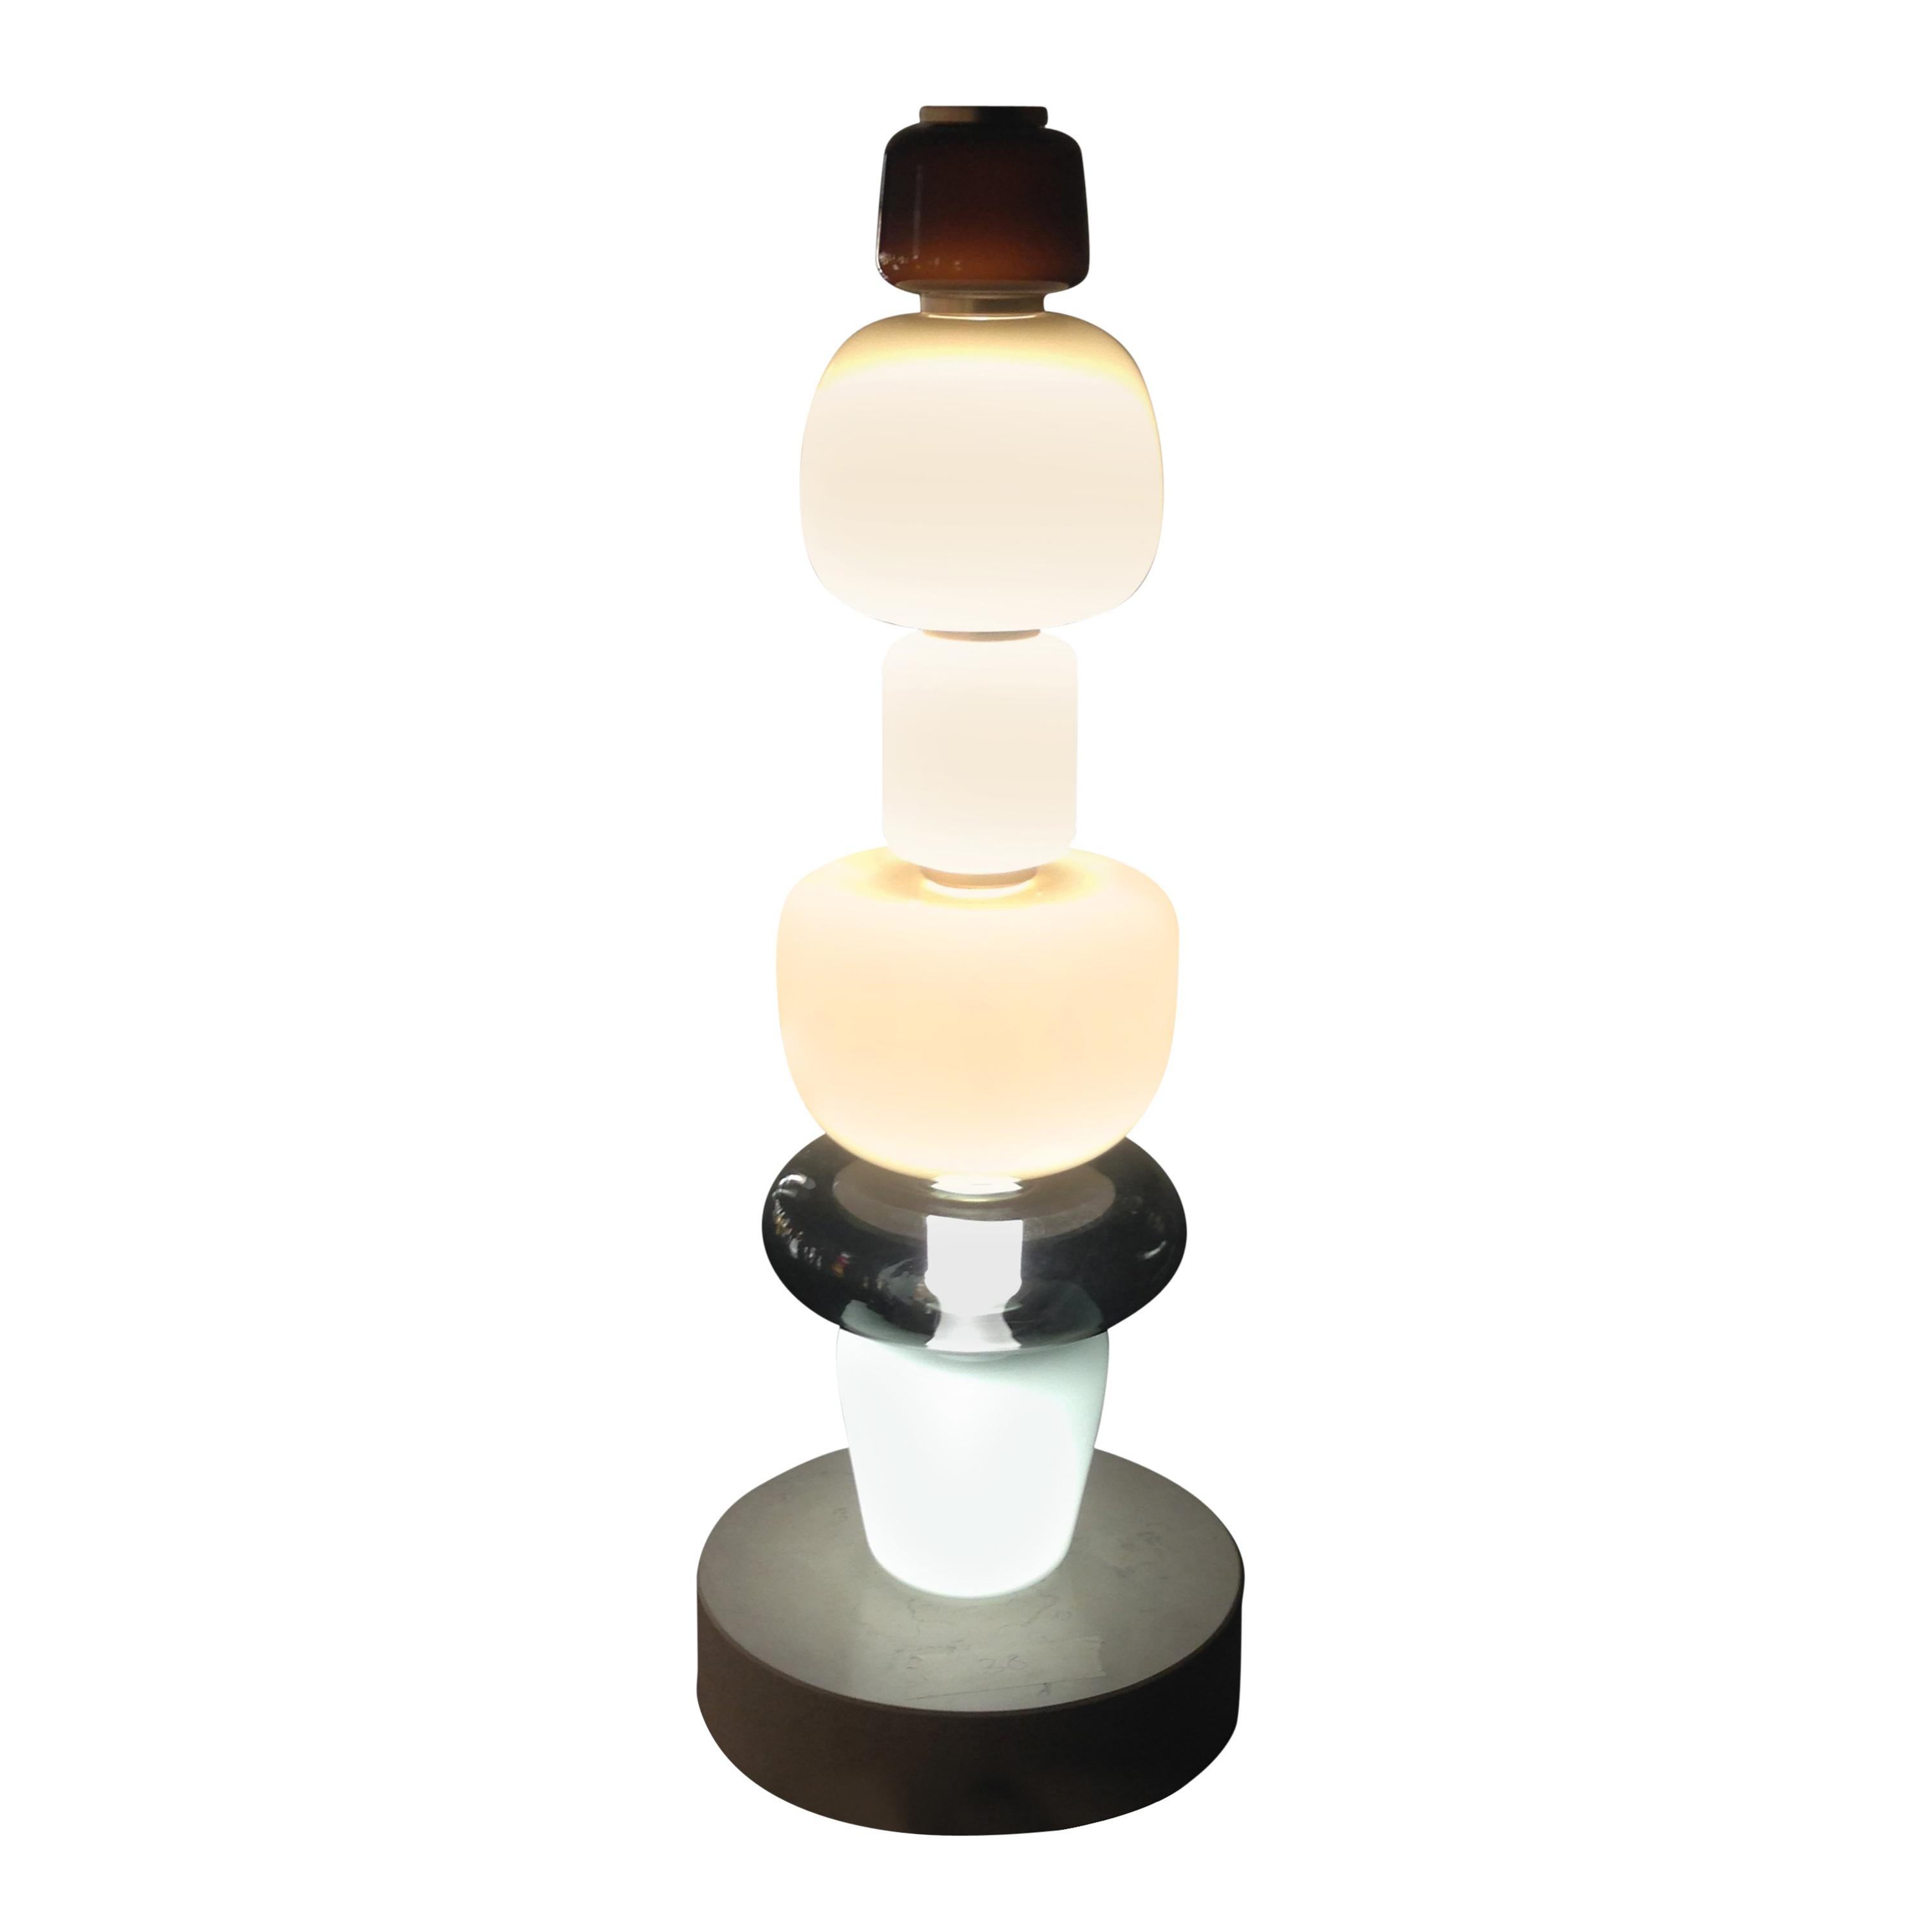 Salviati Pyrae 37 Floor Lamp in Blown Glass by Luca Nichetto & Ben Gorham For Sale